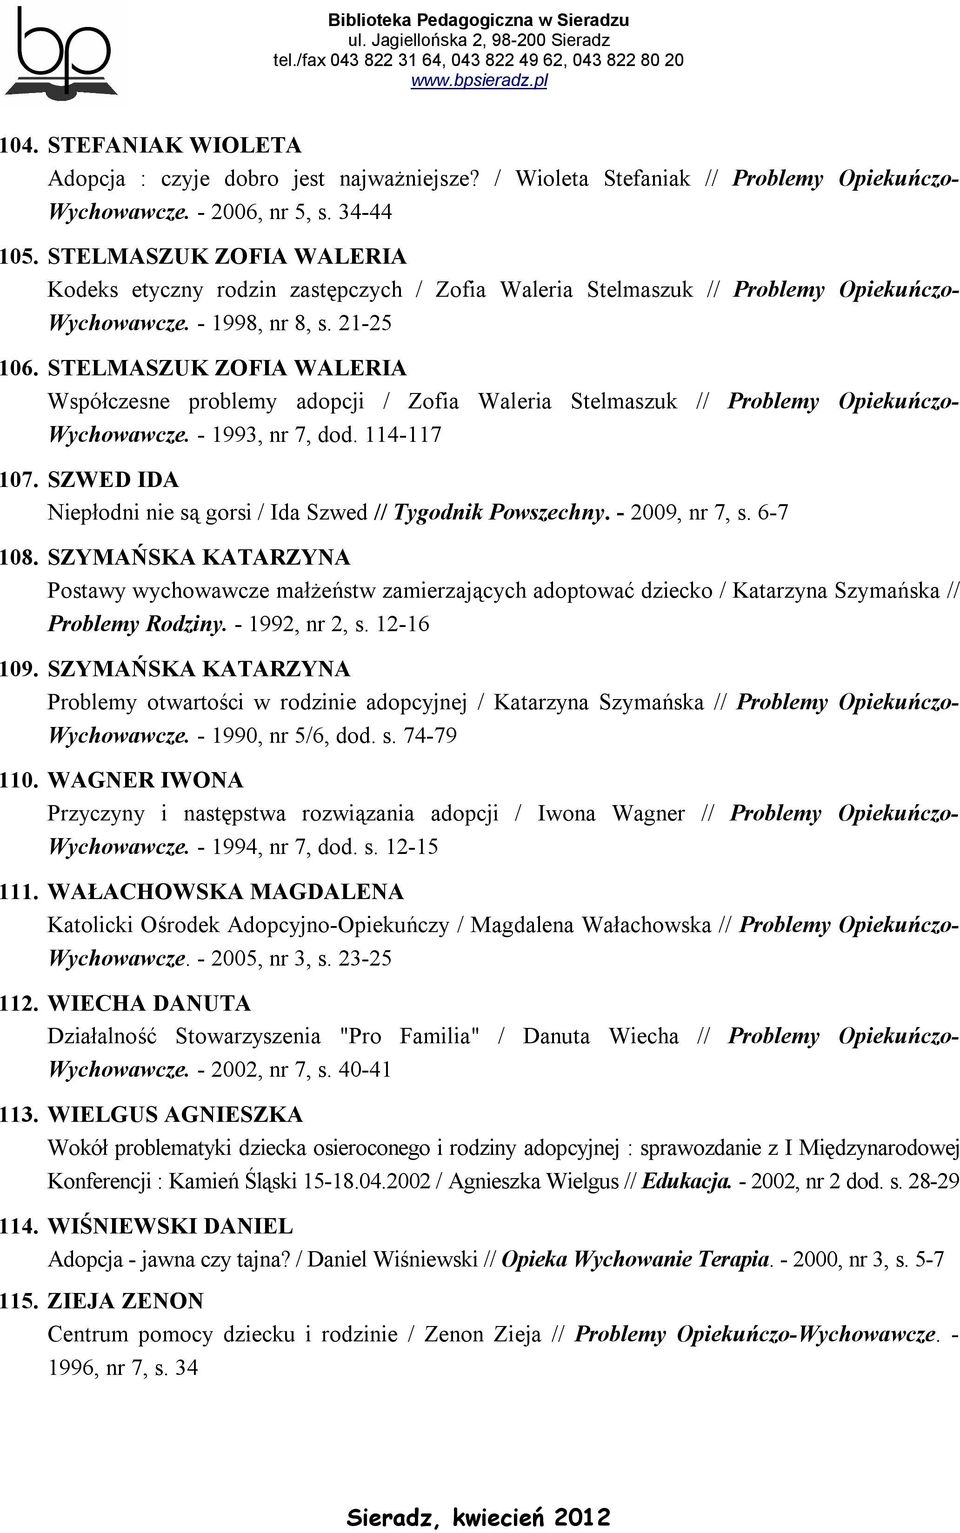 STELMASZUK ZOFIA WALERIA Współczesne problemy adopcji / Zofia Waleria Stelmaszuk // Problemy Opiekuńczo- Wychowawcze. - 1993, nr 7, dod. 114-117 107.